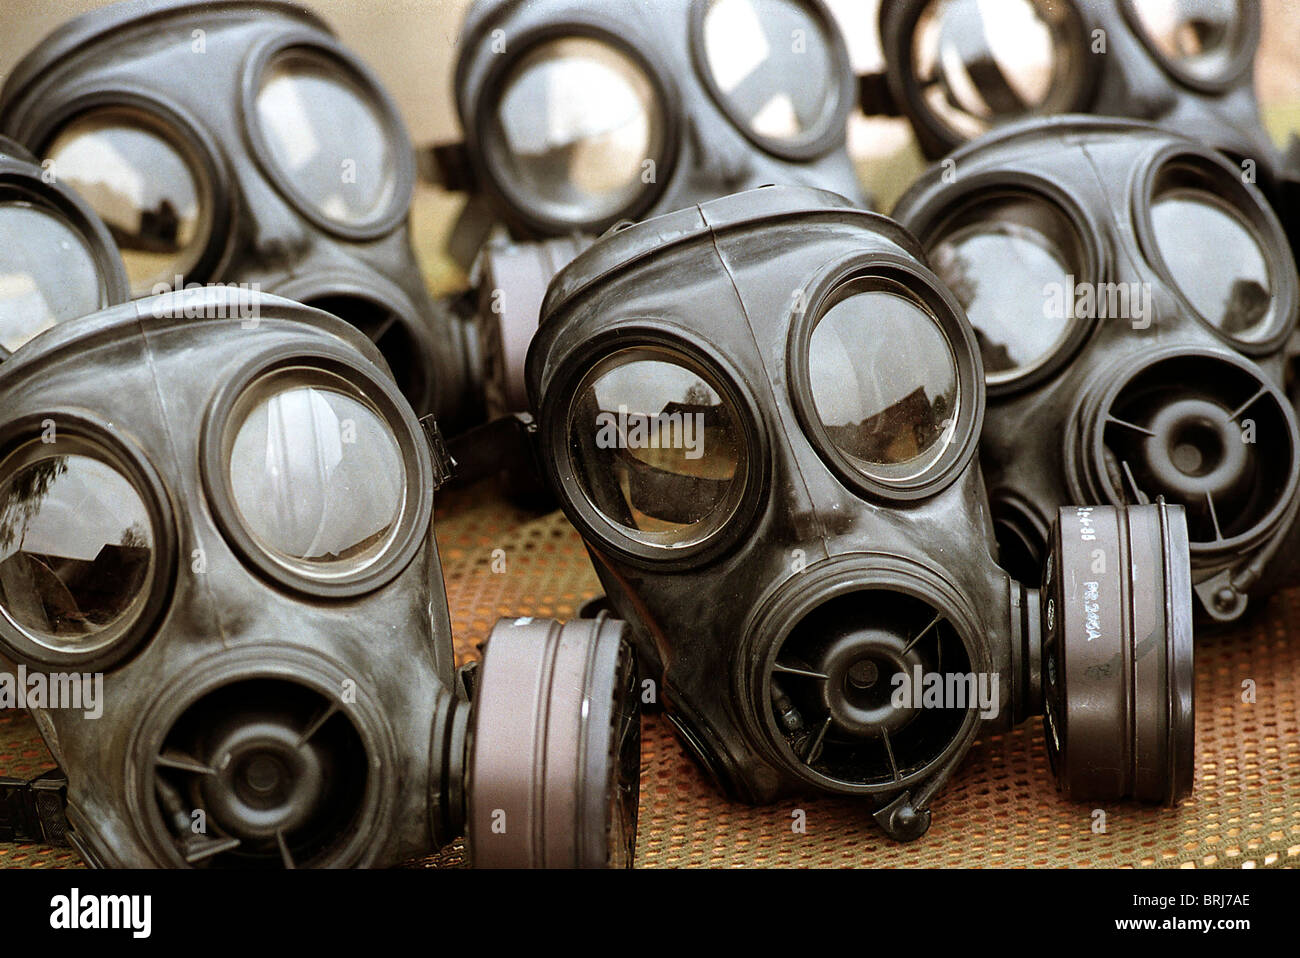 S10 Army Gas Masks Stock Photo Alamy